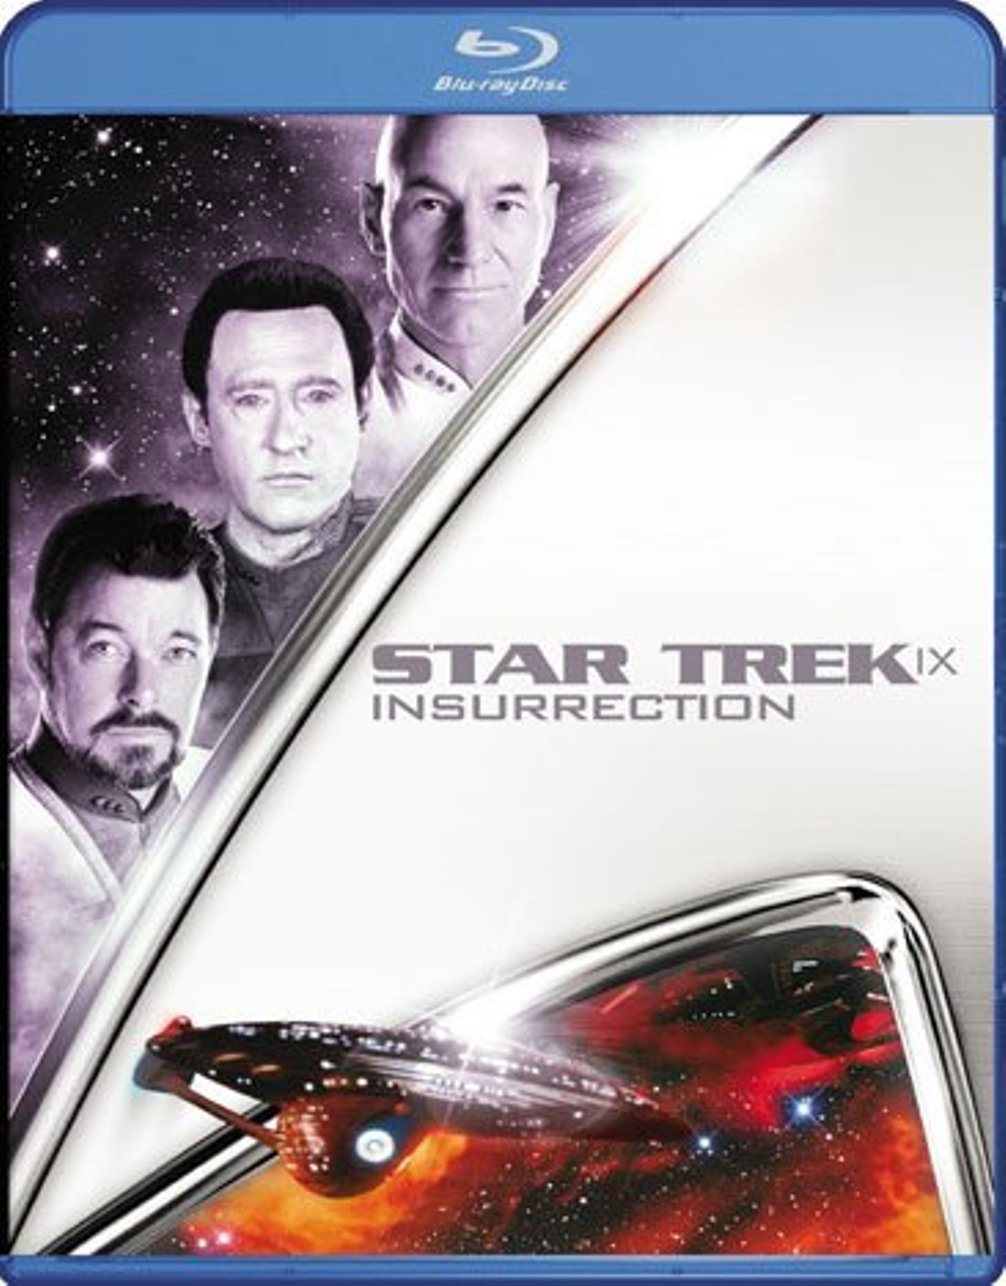 Star Trek IX: Insurrection